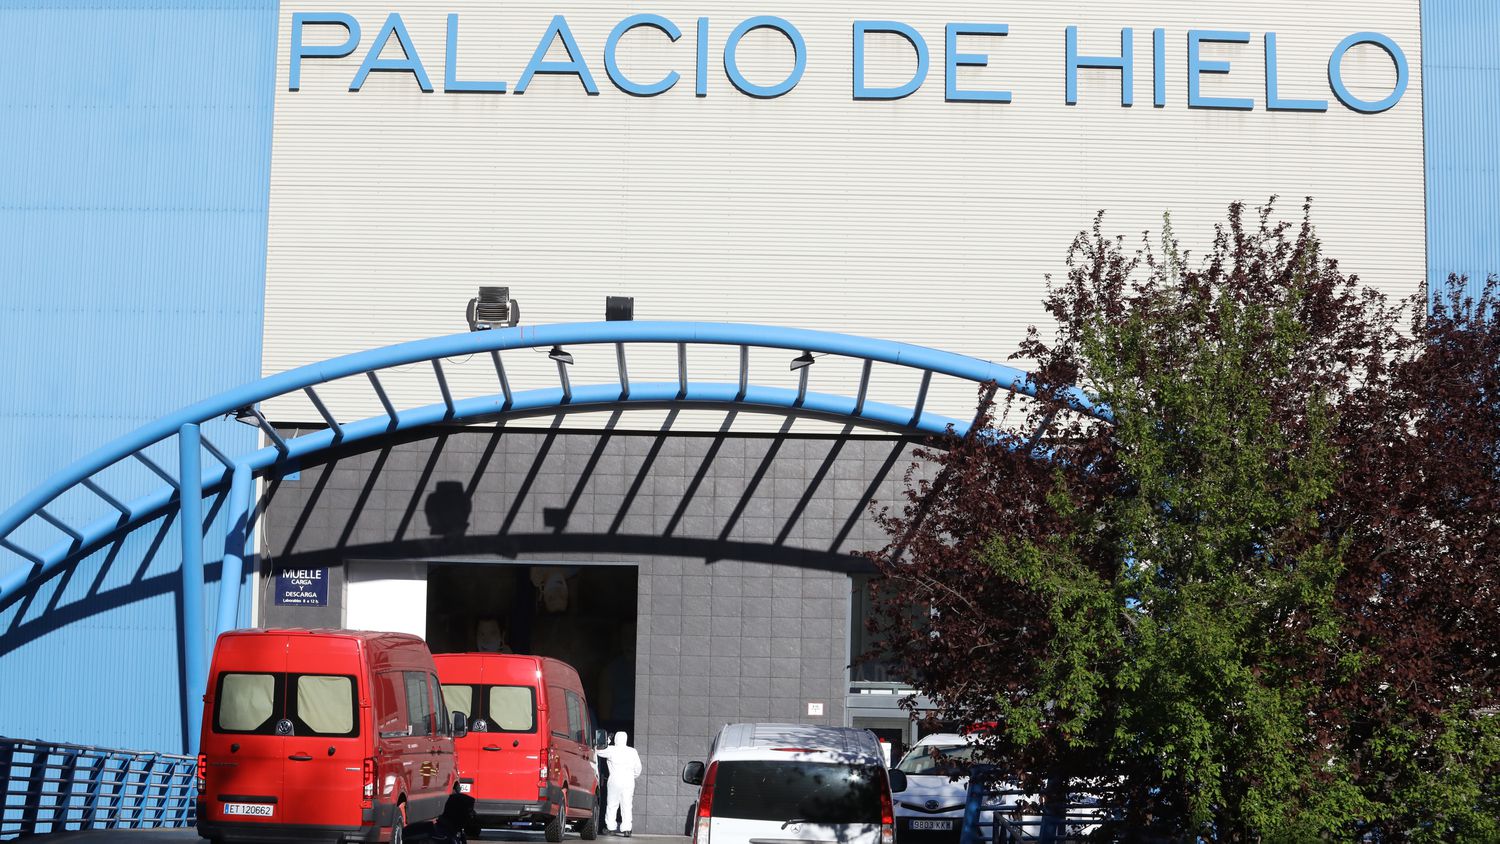 Le unitá militari d'emergenza UME trasladano corpi alla pista di pattinaggio "Palacio de Hielo" di Madrid.